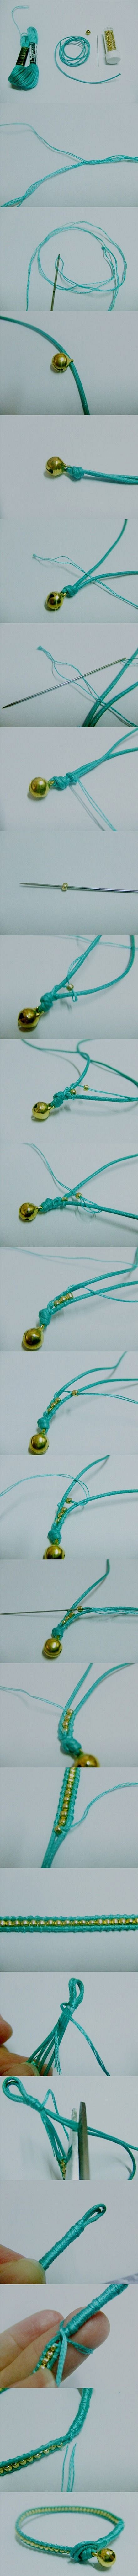 金珠绿松石皮绳手链，附有完整的教程说明哦...